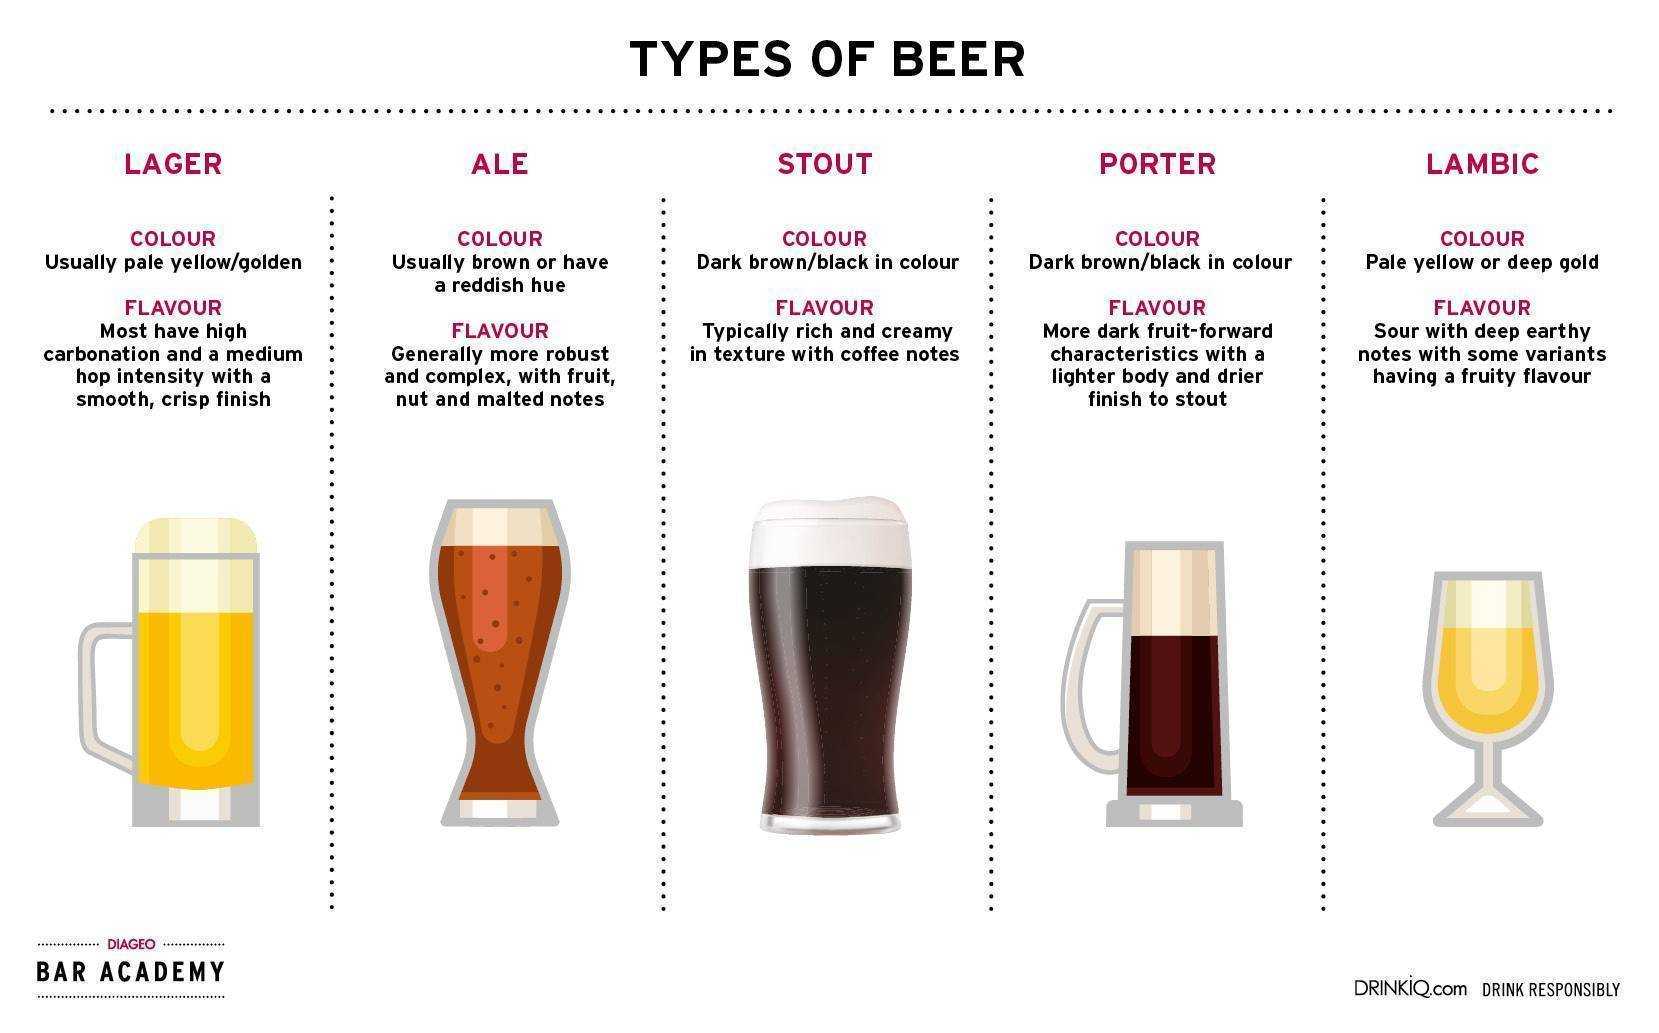 Стаут (stout): описание, производство и правила употребления разных видов элевого пива (ирландского, шоколадного, темного, гиннес, устричного)